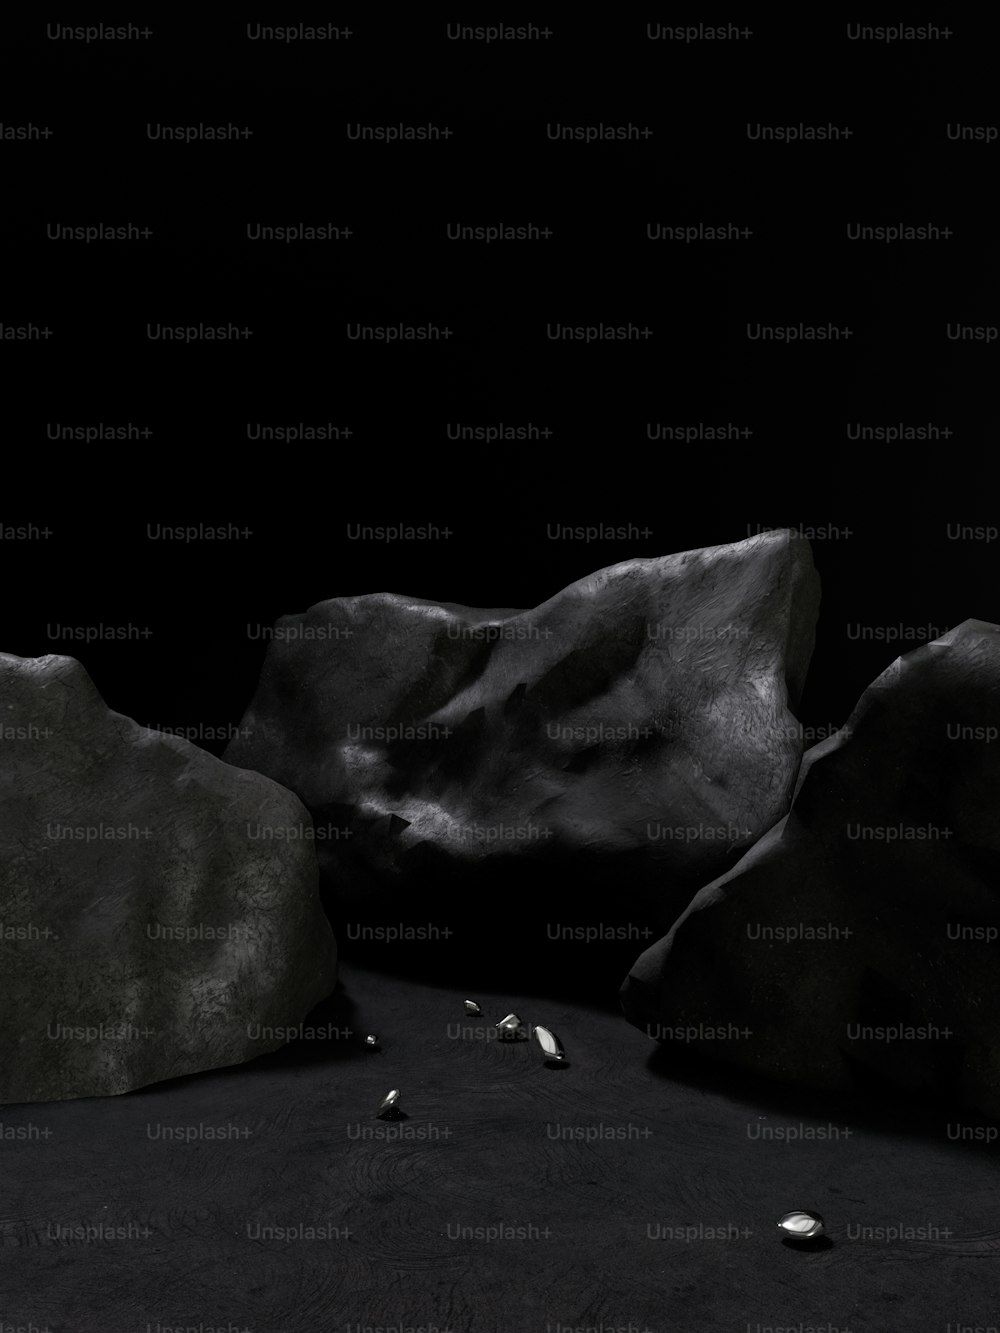 Une photo en noir et blanc de roches et de cailloux